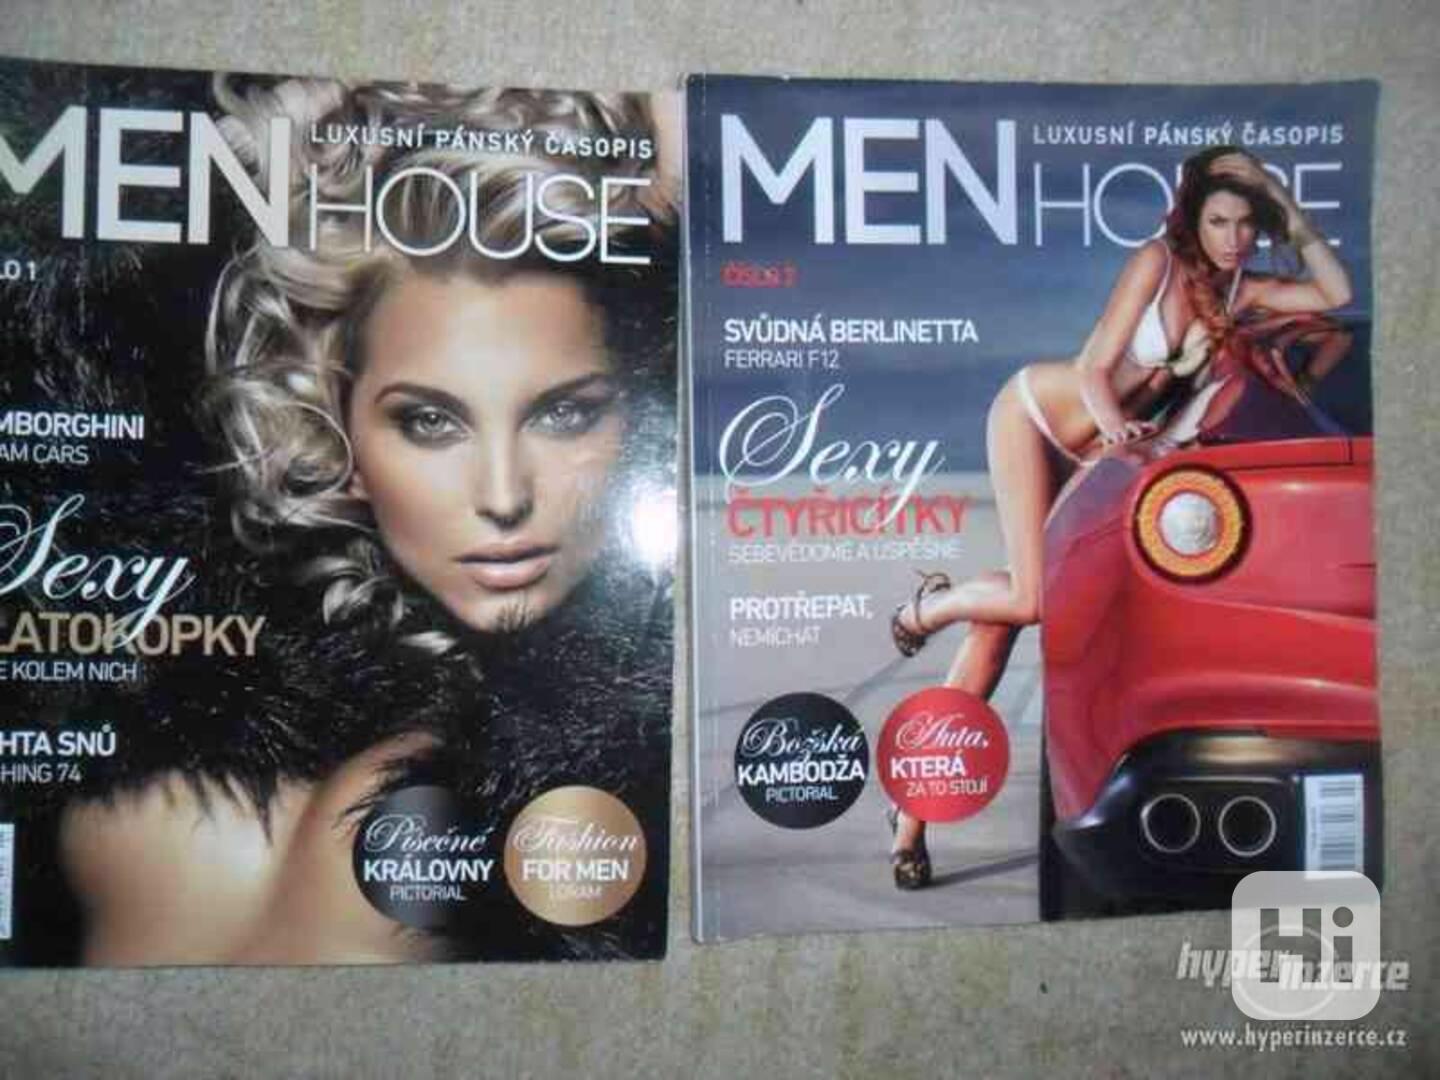 Prodám dva luxusní pánské časopisy Menhouse - foto 1